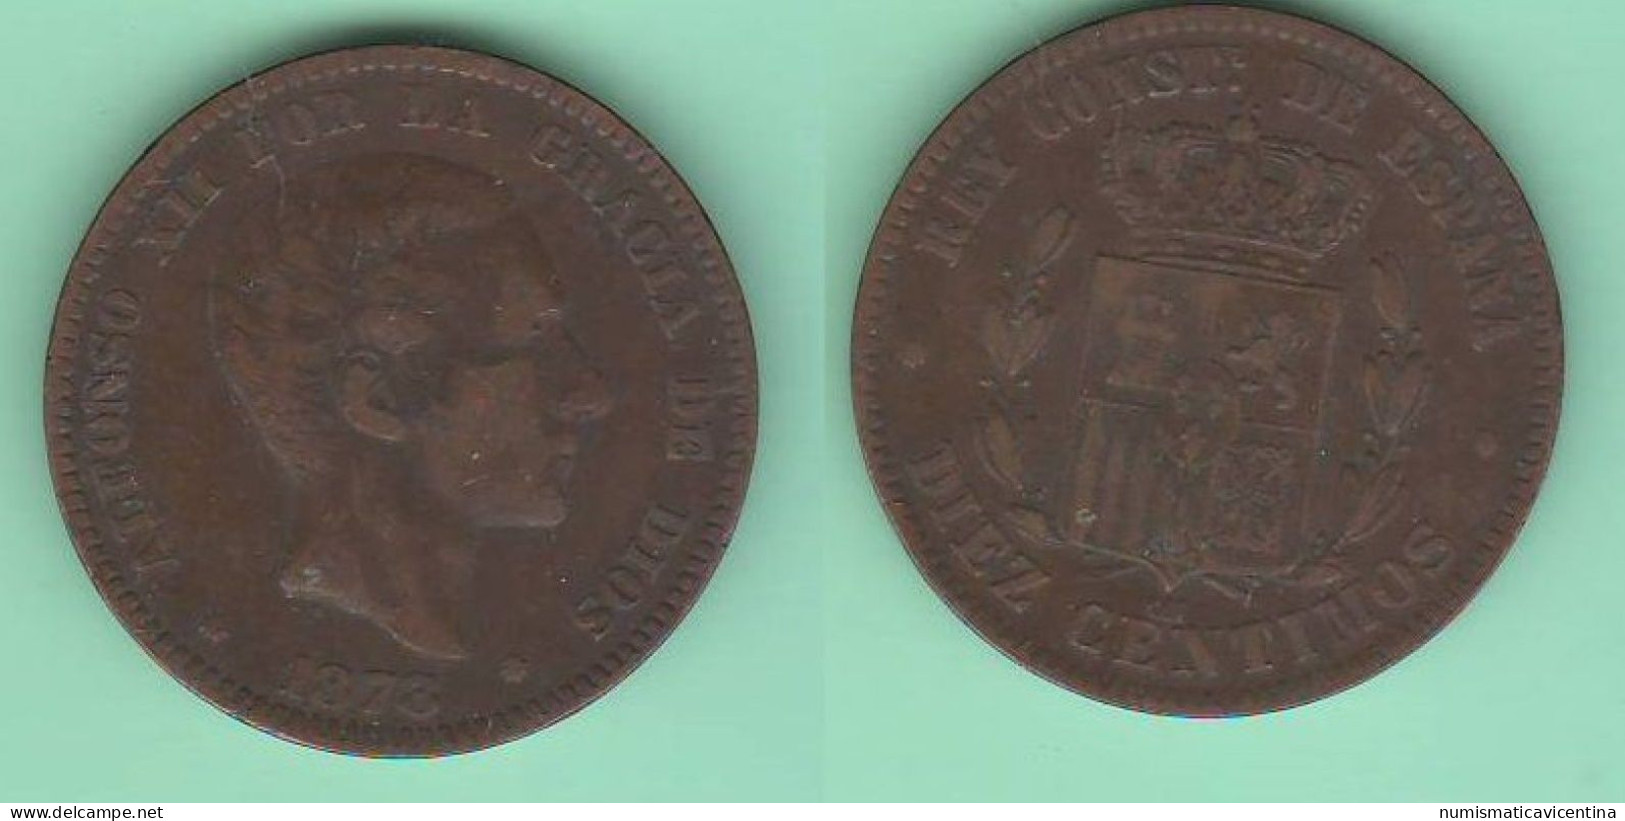 Spagna 10 Centimos 1878 Alfonso XII Espana Spain Espagne Bronze Coin - Münzen Der Provinzen